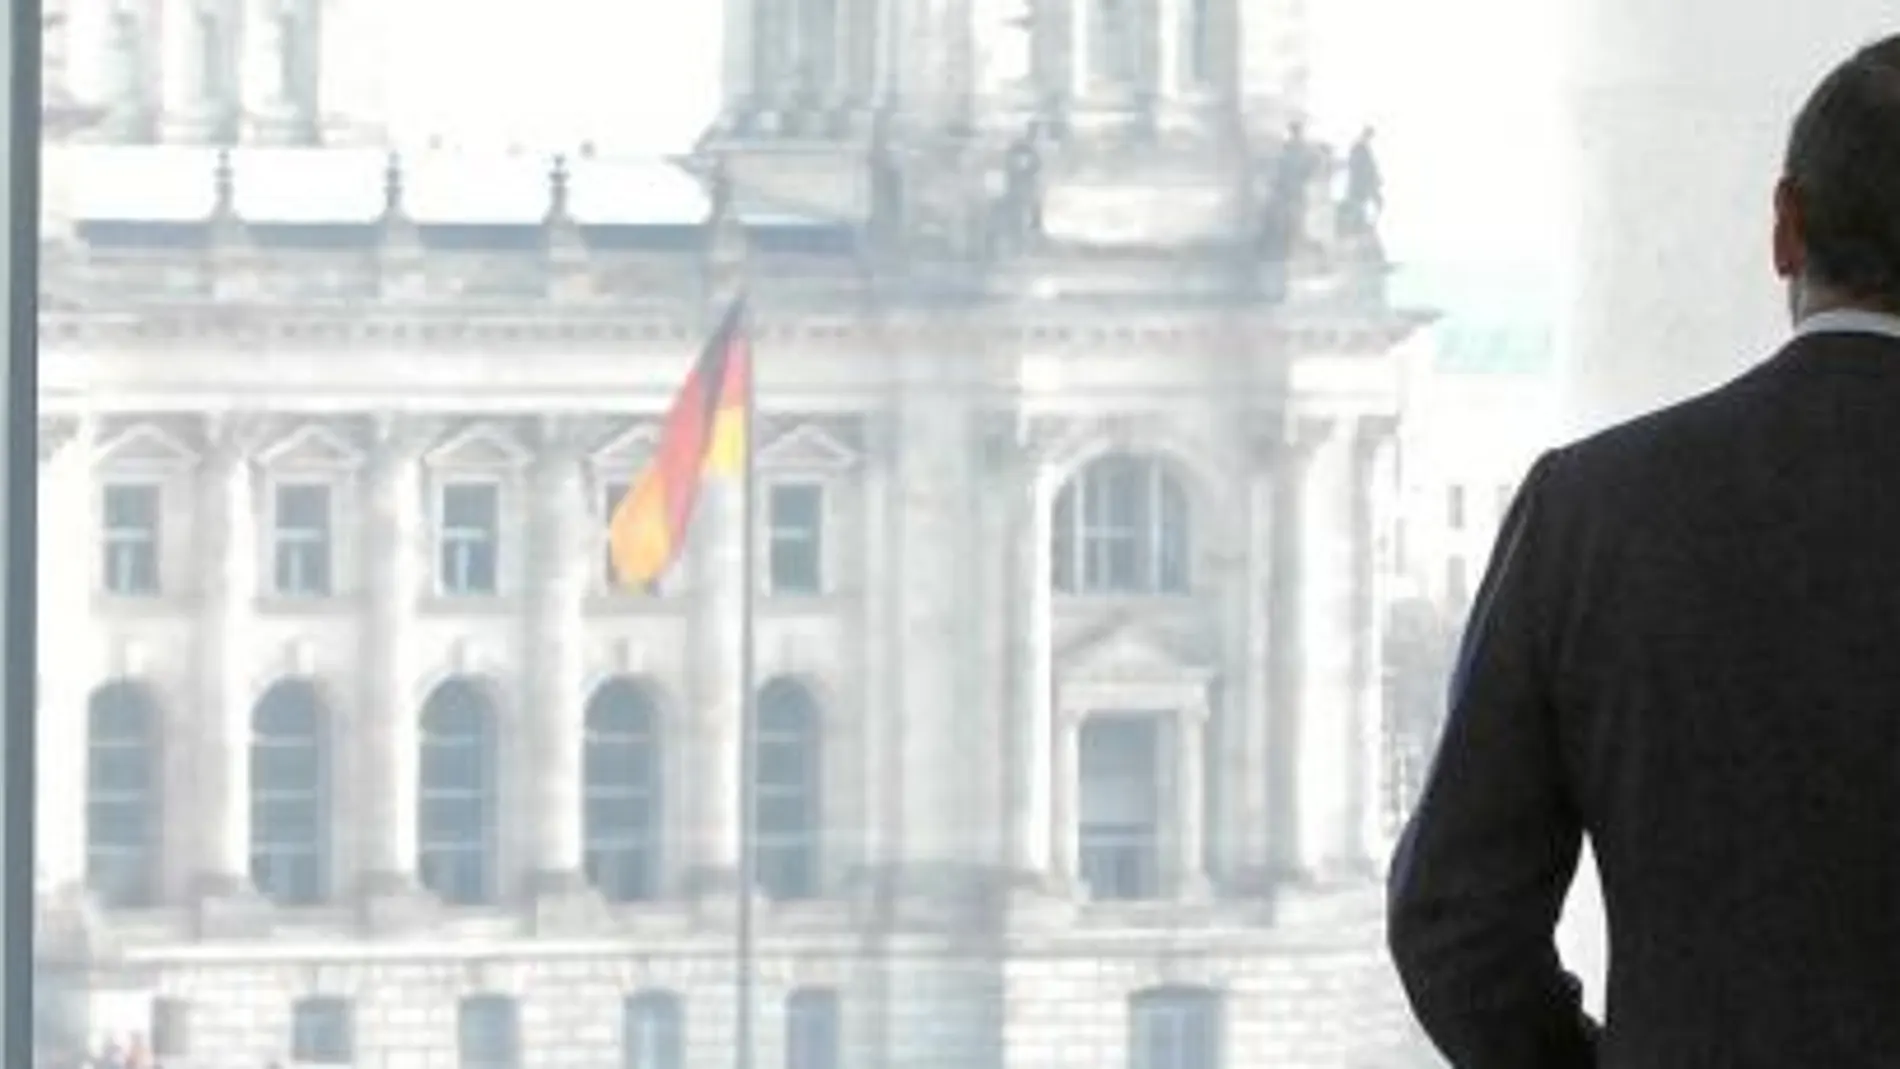 Angela Merkel le muestra a Mariano Rajoy el Parlamento alemán, al fondo, durante una visita a Berlín en el año 2008